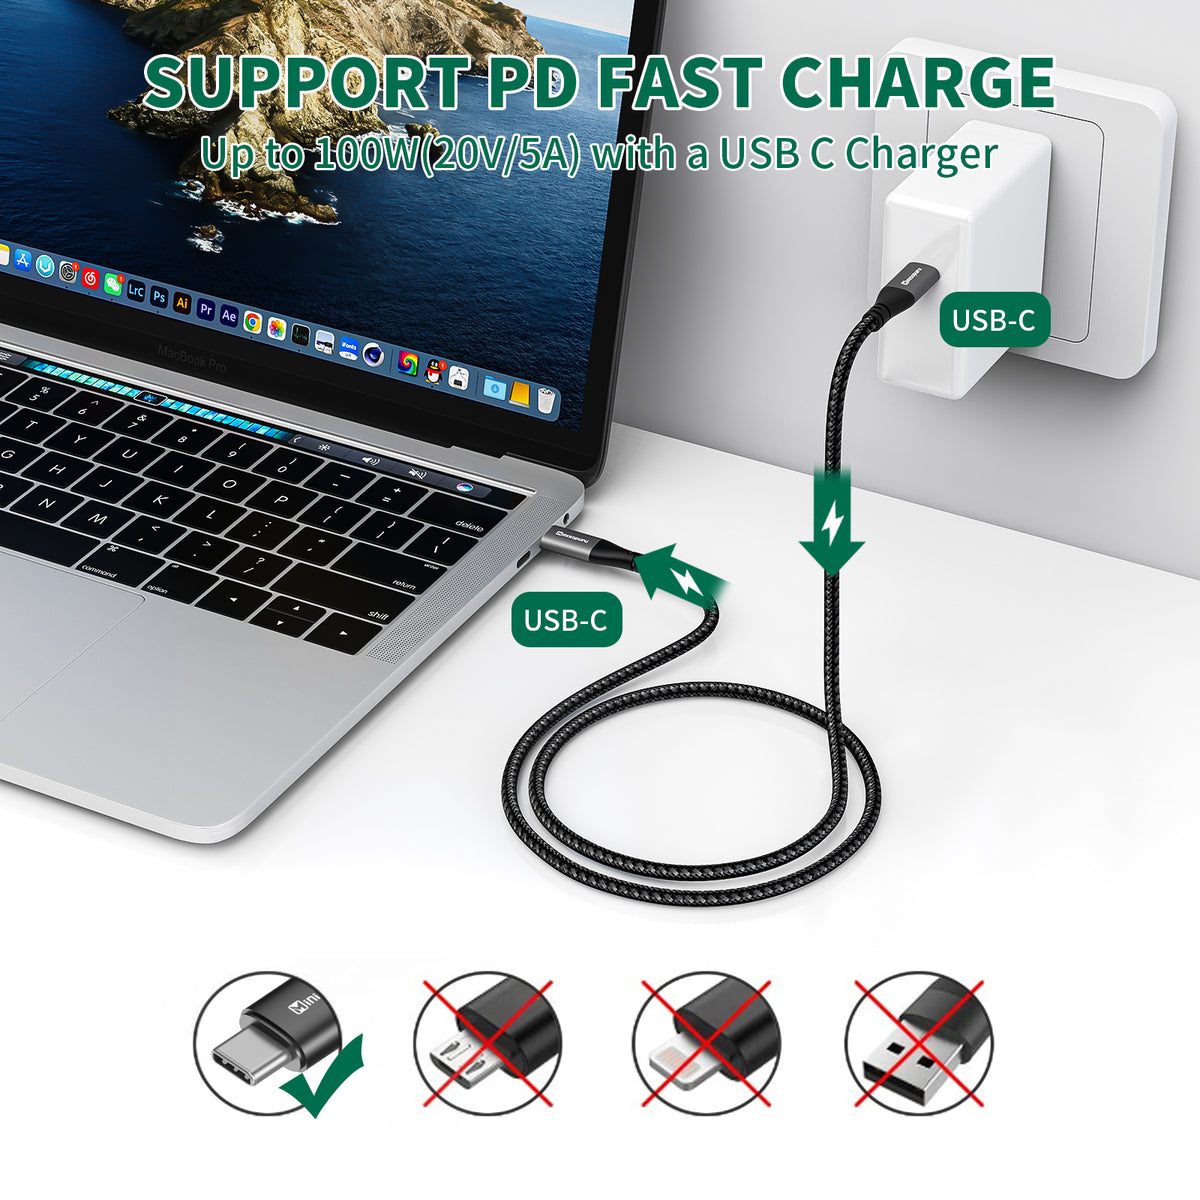 Minisopuru USB C Hub for iMac 24 inch 2021/2023, iMac USB Hub